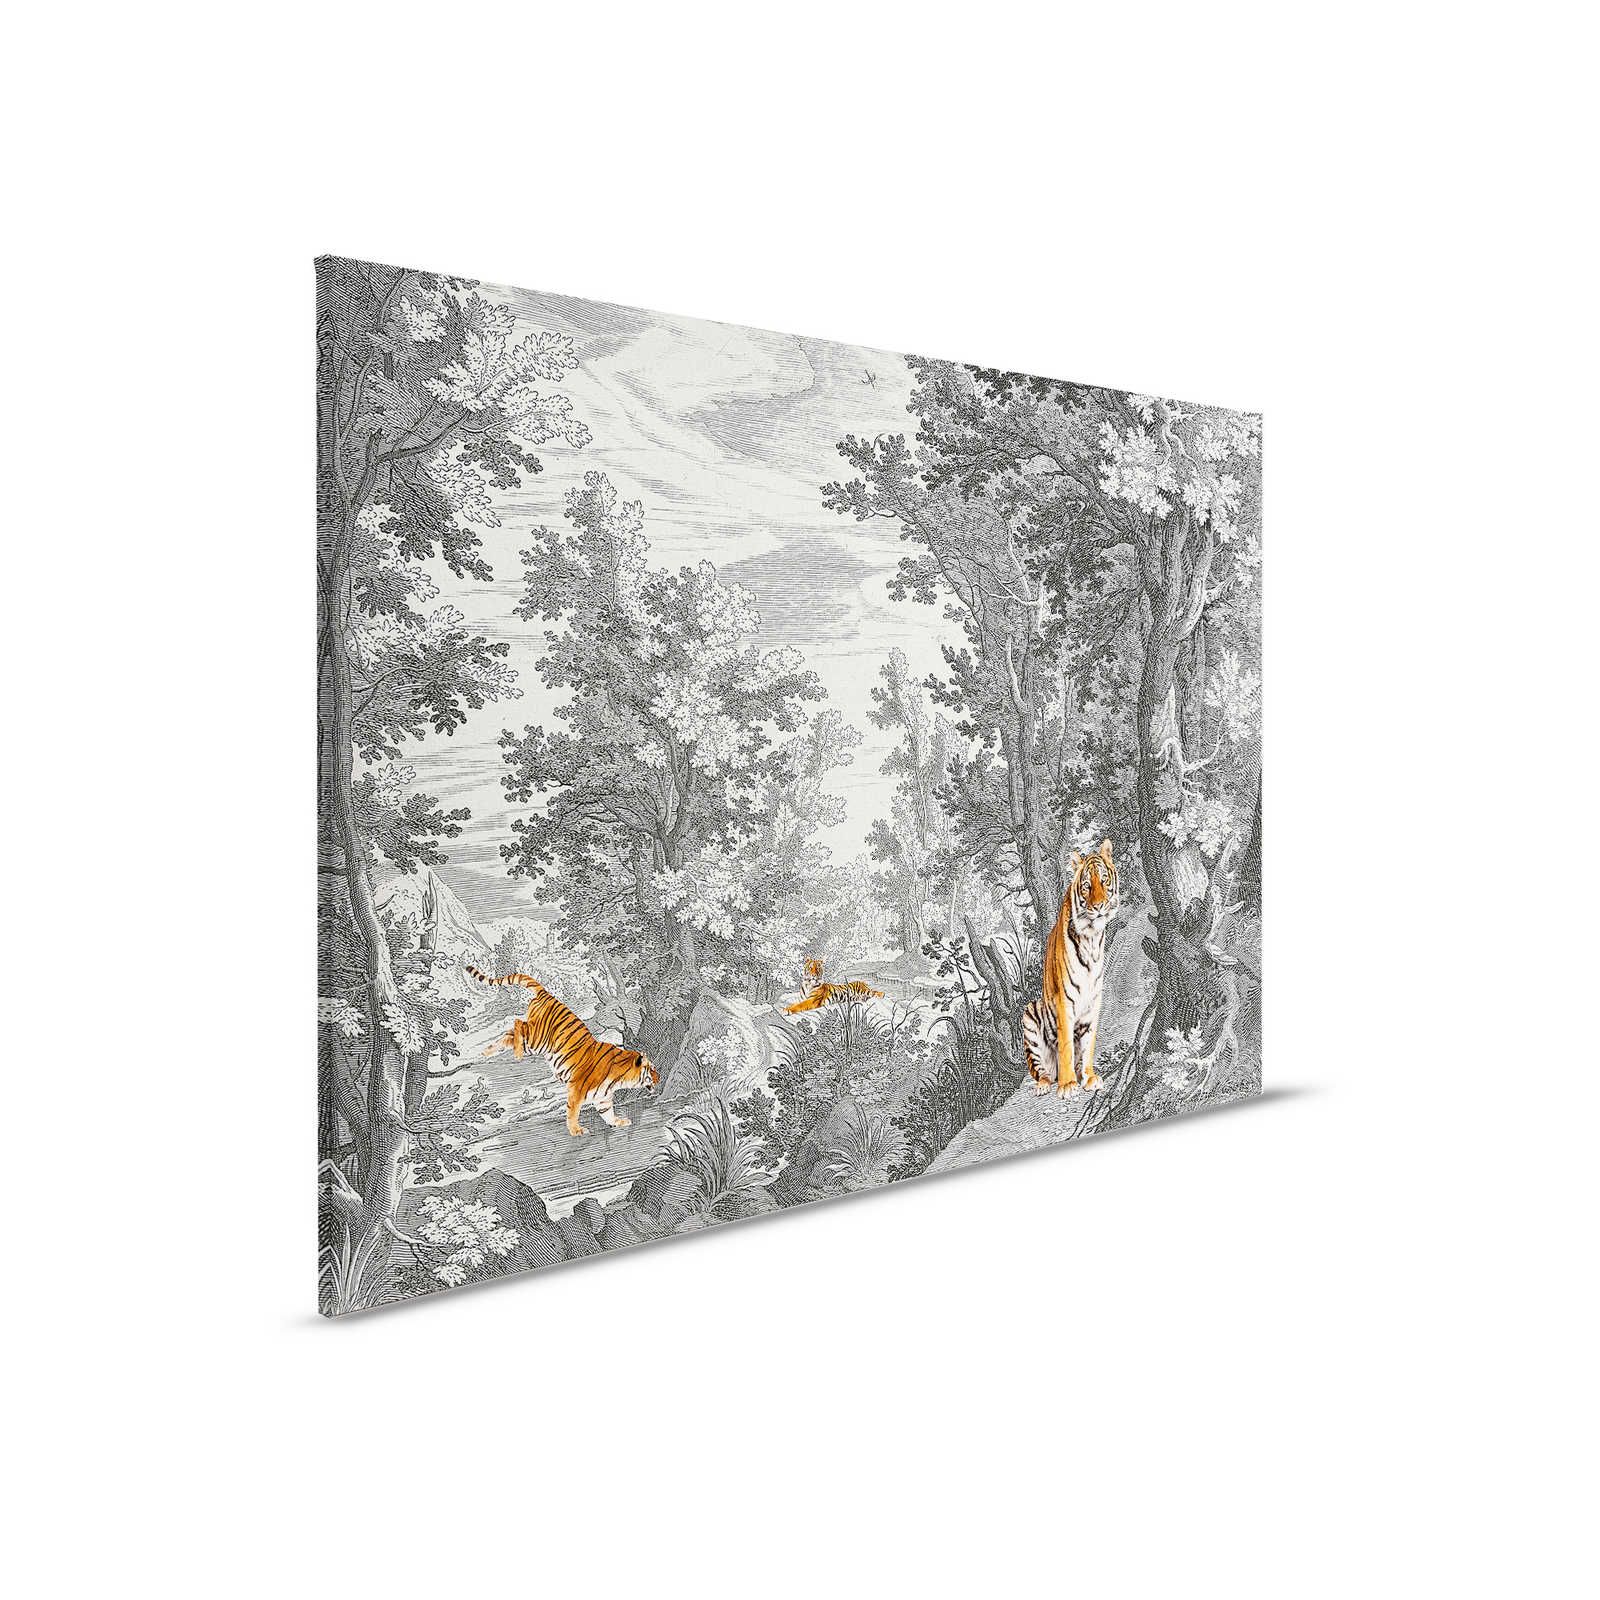 Fancy Forest 2 - Canvas schilderij Klassiek landschap met tijger - 0,90 m x 0,60 m
